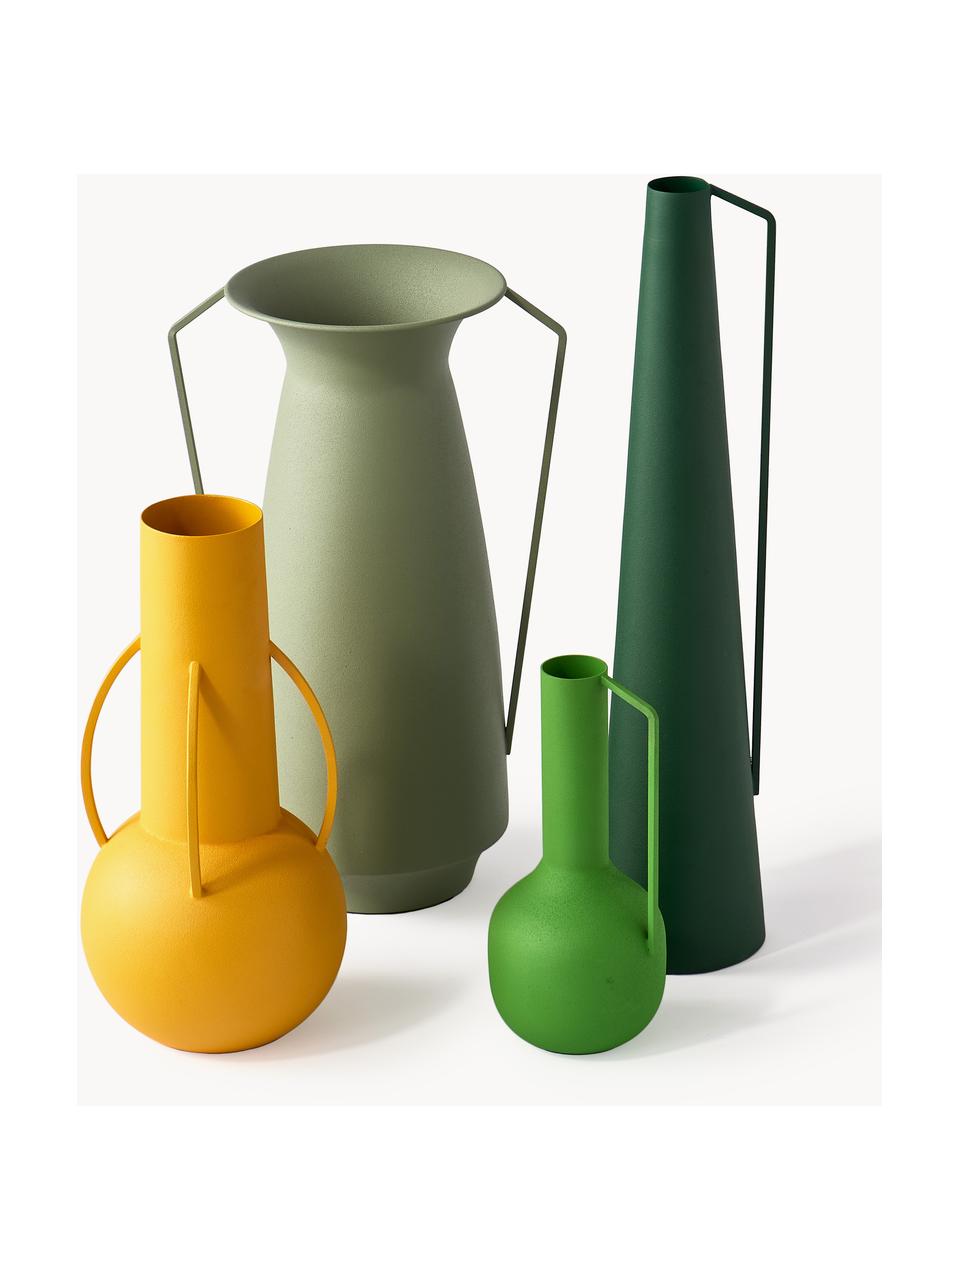 Handgefertigte Deko-Vasen Roman, 4er-Set, Eisen, pulverbeschichtet, Grüntöne, Gelb, Set mit verschiedenen Größen